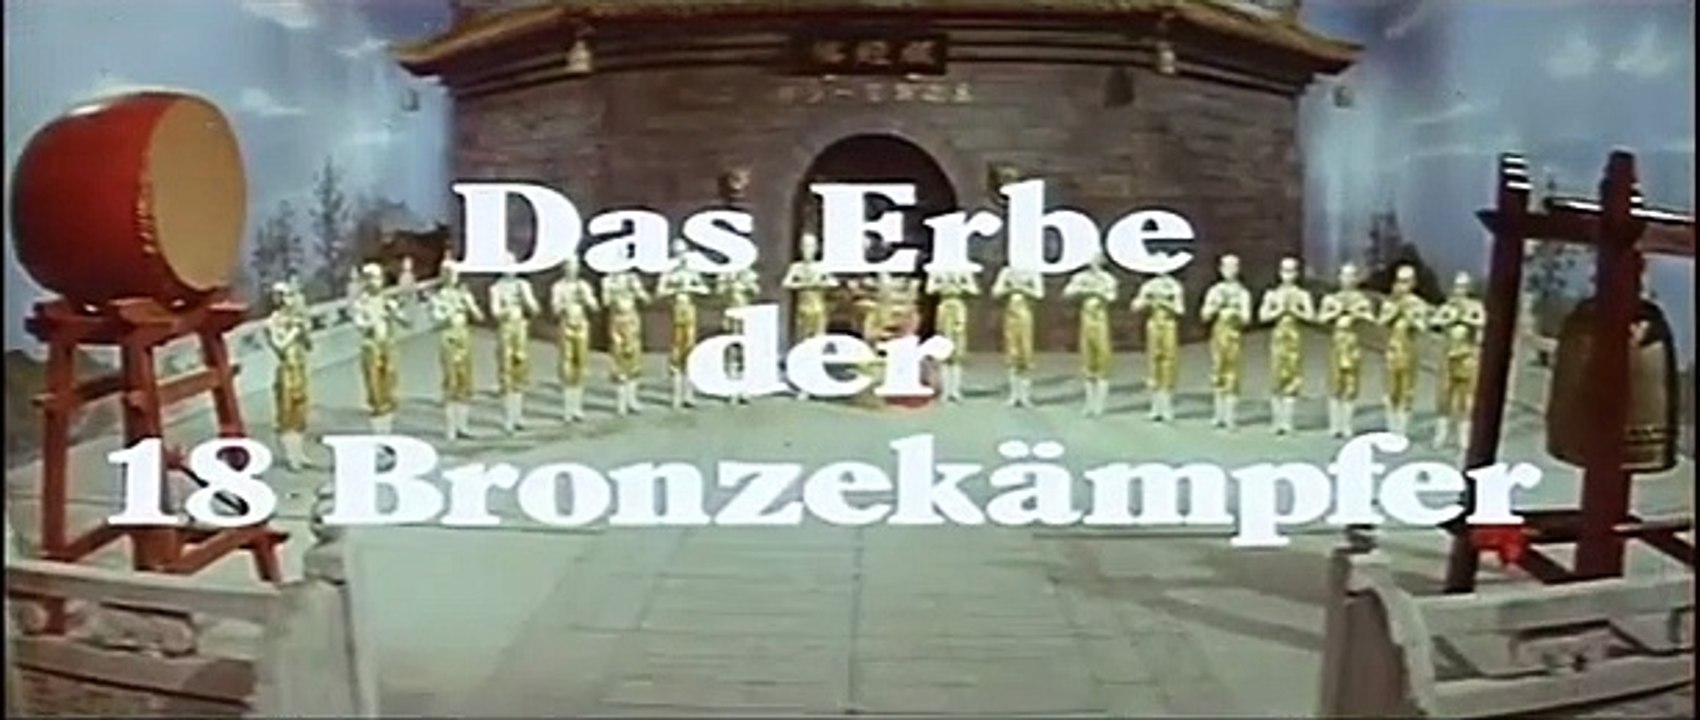 Das Erbe der 18 Bronzekämpfer | movie | 1976 | Official Trailer